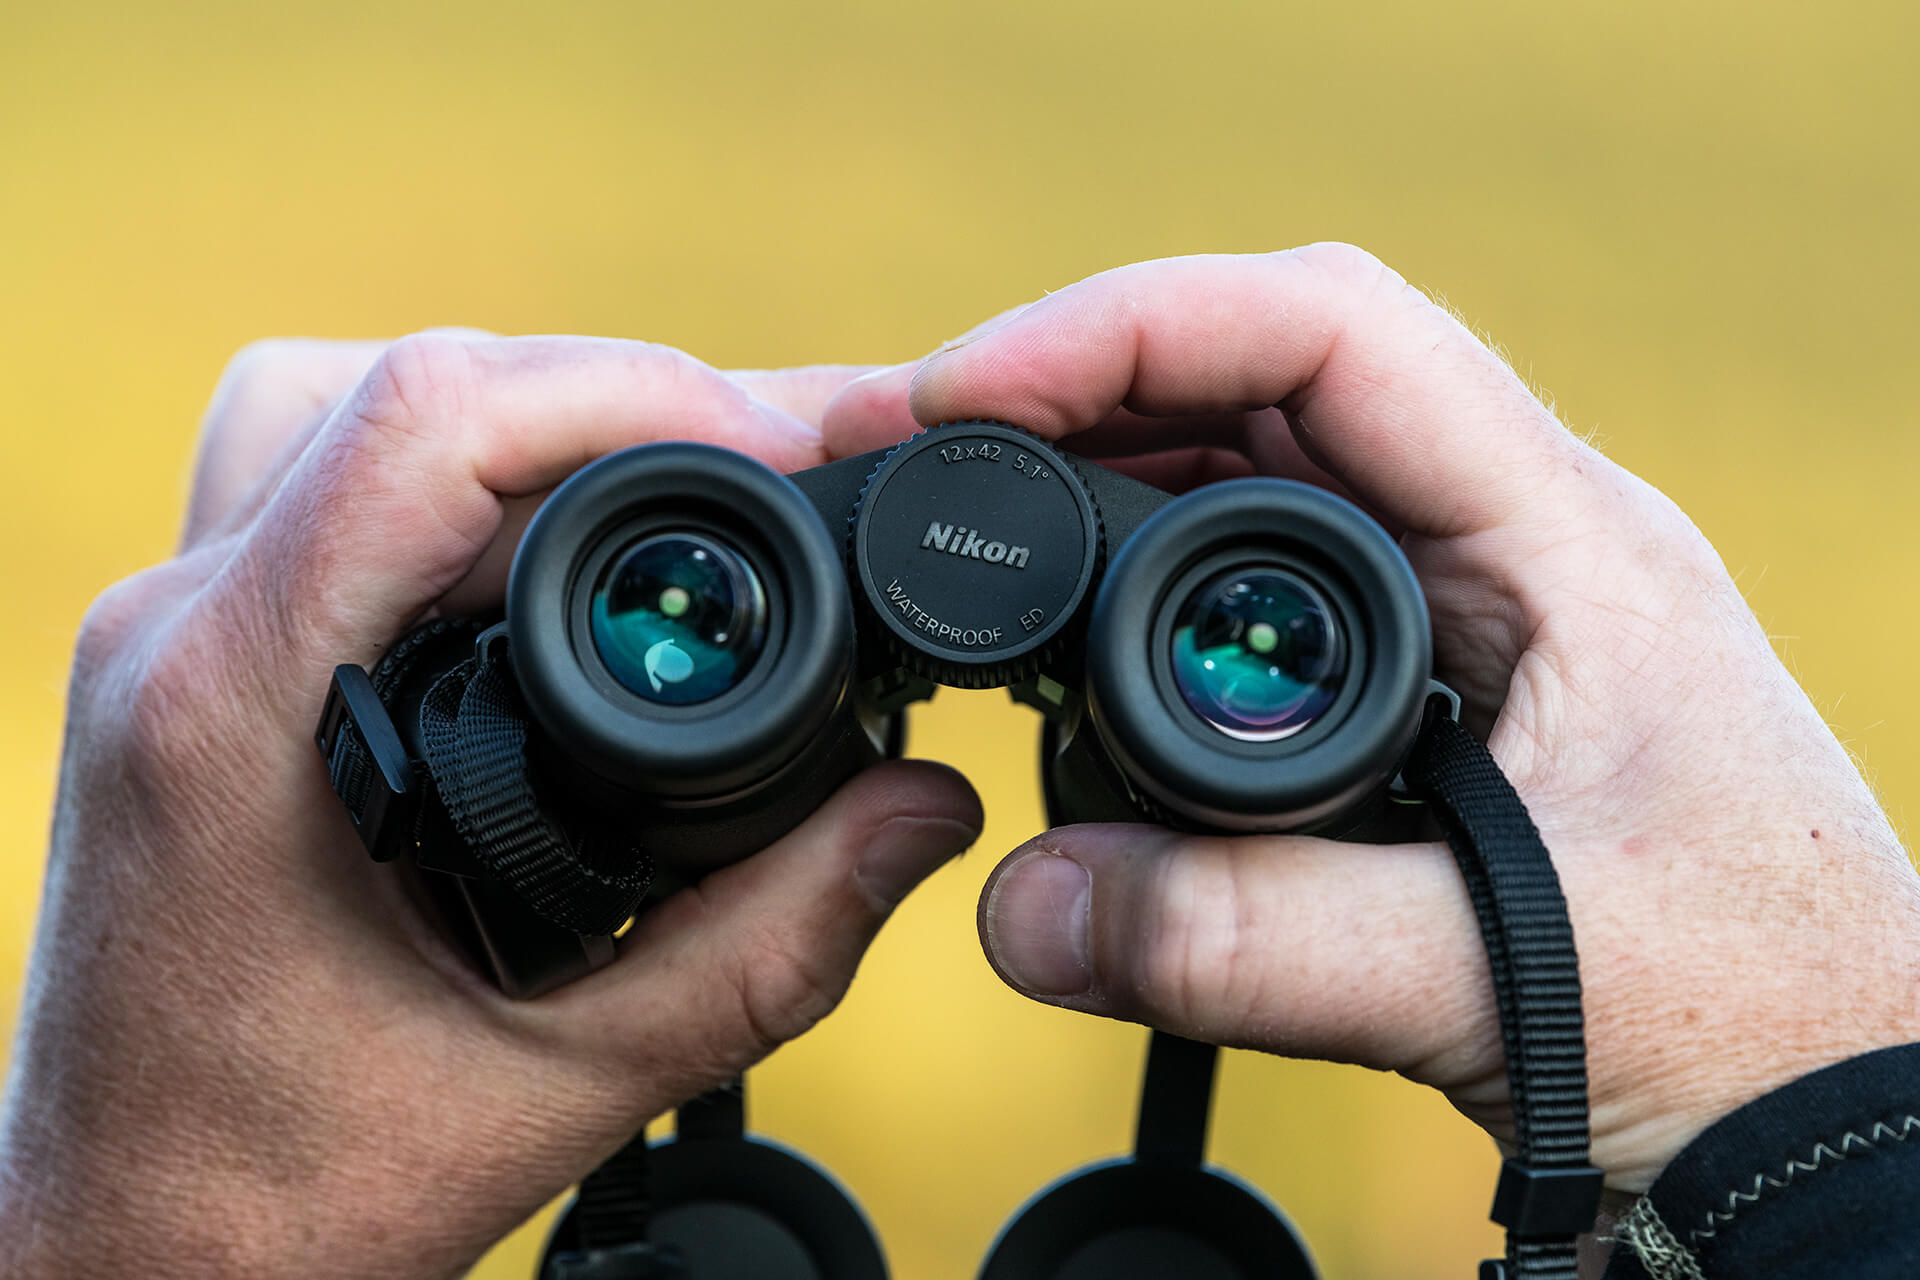 Dalekohled Nikon Monarch M5 má otočné a posuvné gumové očnice, které nabízejí vysoký komfort a umožňují snadné umístění očí do ideální pozorovací pozice.